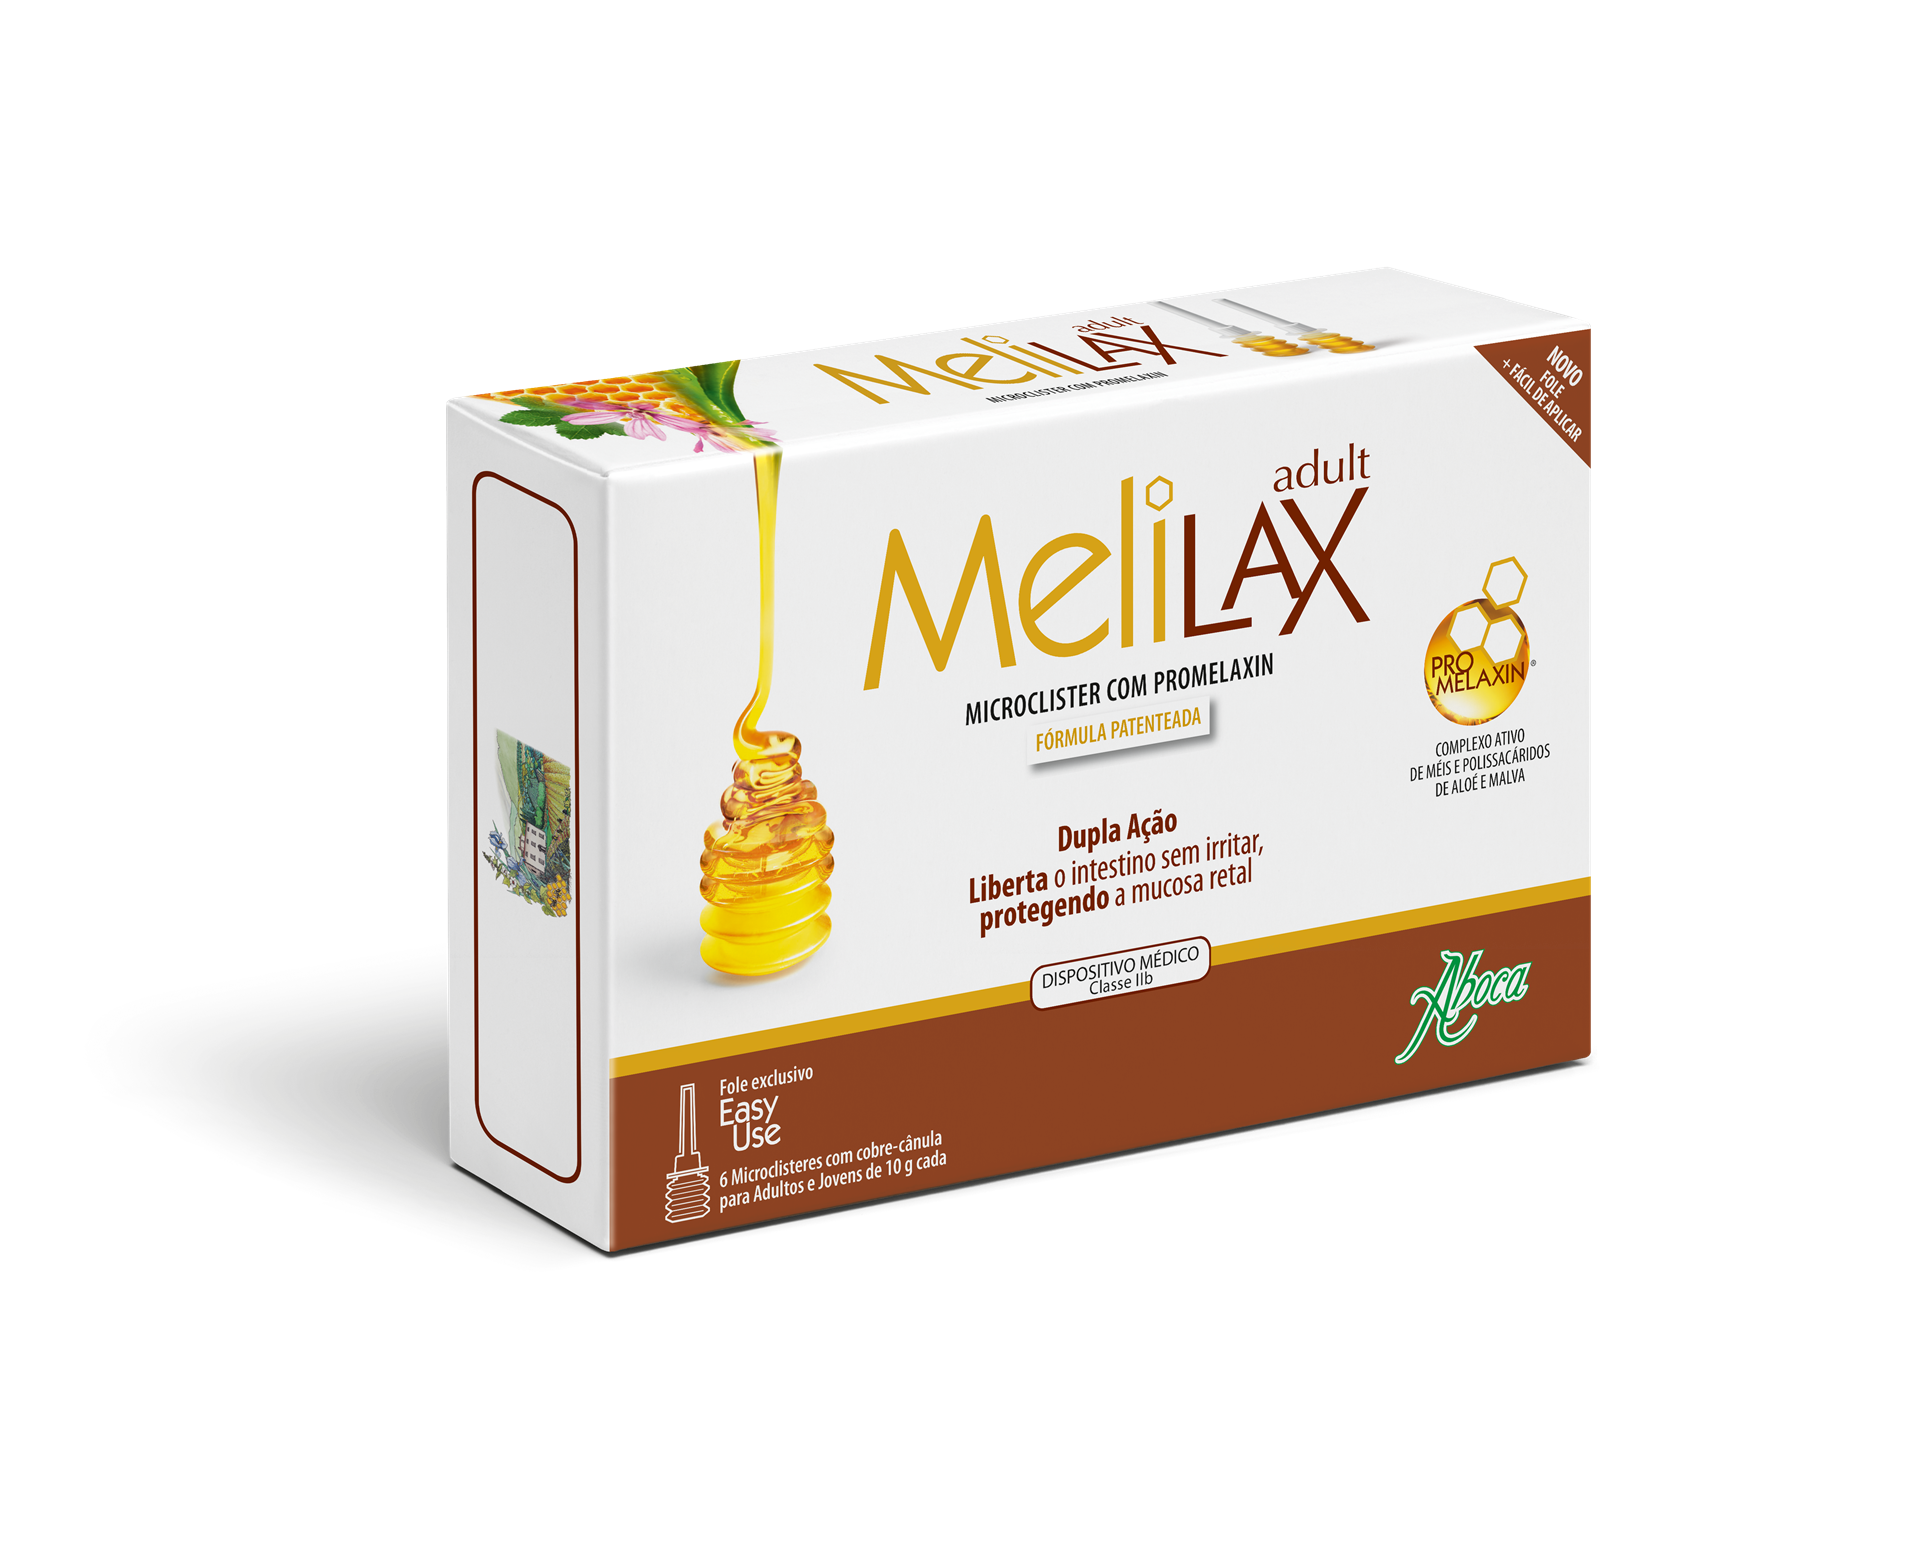 Melilax-Pediatrico-Micro-Clister midroenema adulto